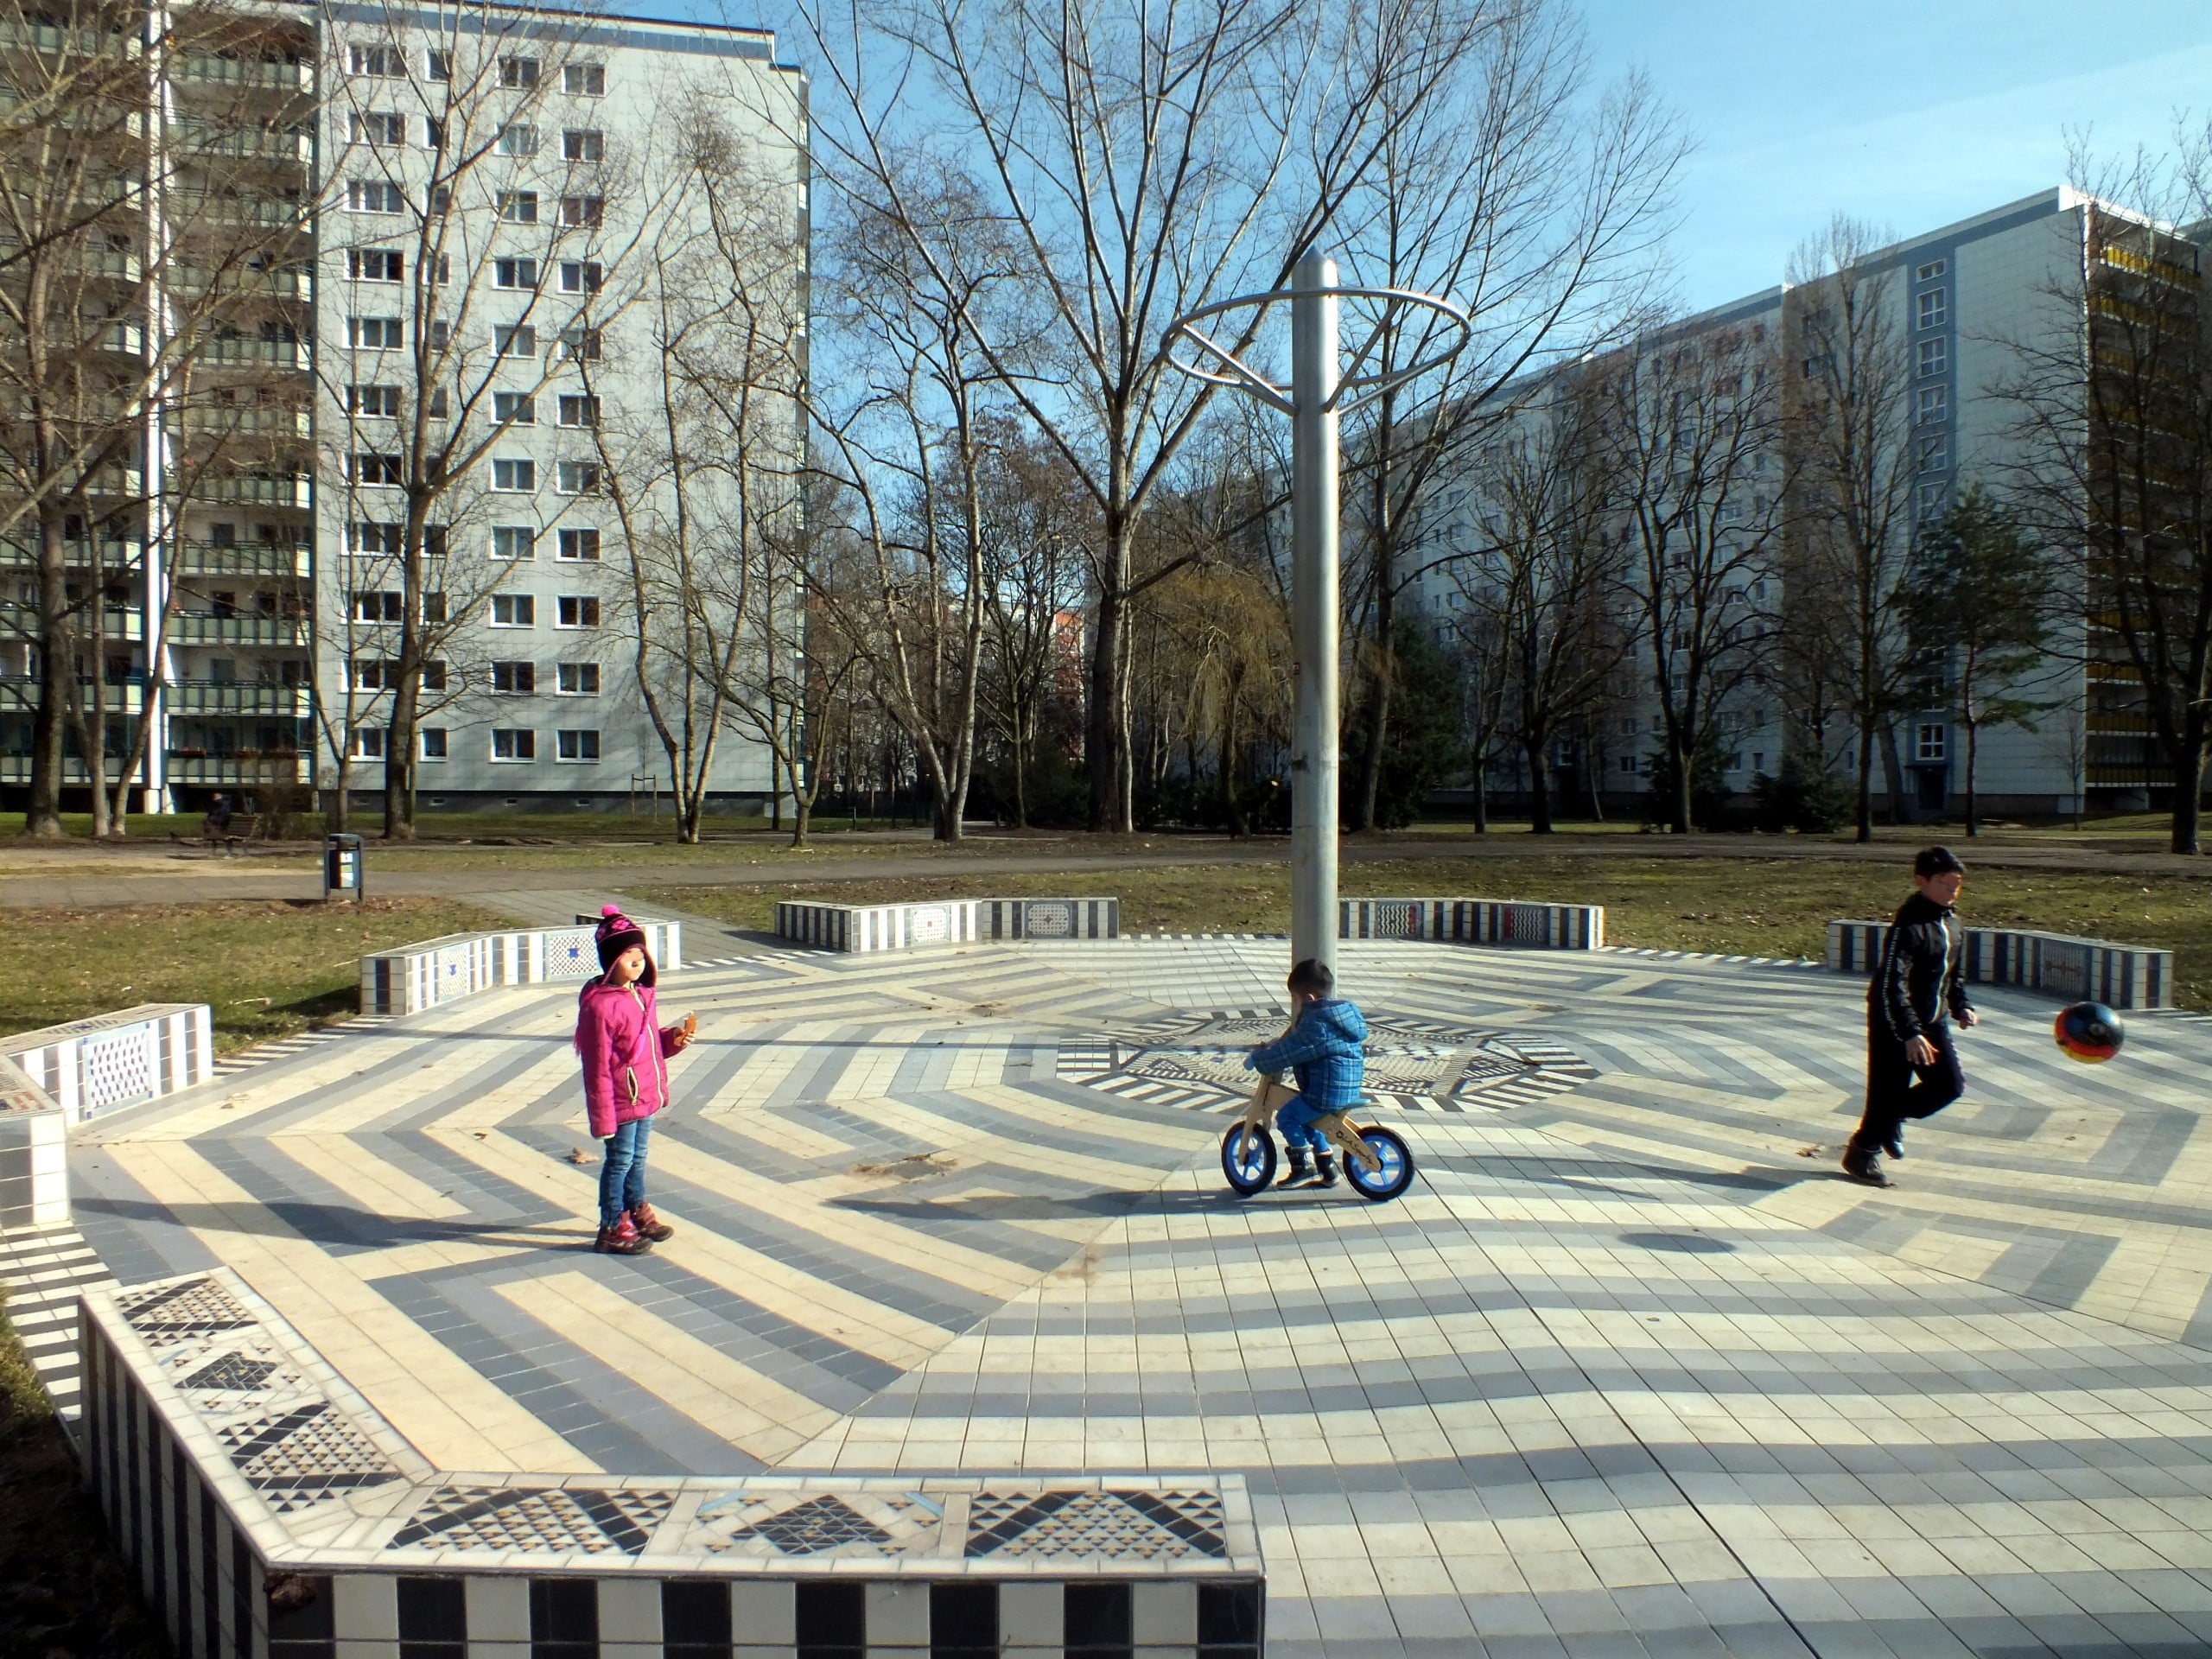 Kinder spielen in einer der vielen Freiflächen von Fennpfuhl. Bildquelle: Angela M. Arnold, Berlin (=44Pinguine), CC BY-SA 3.0 , via Wikimedia Commons